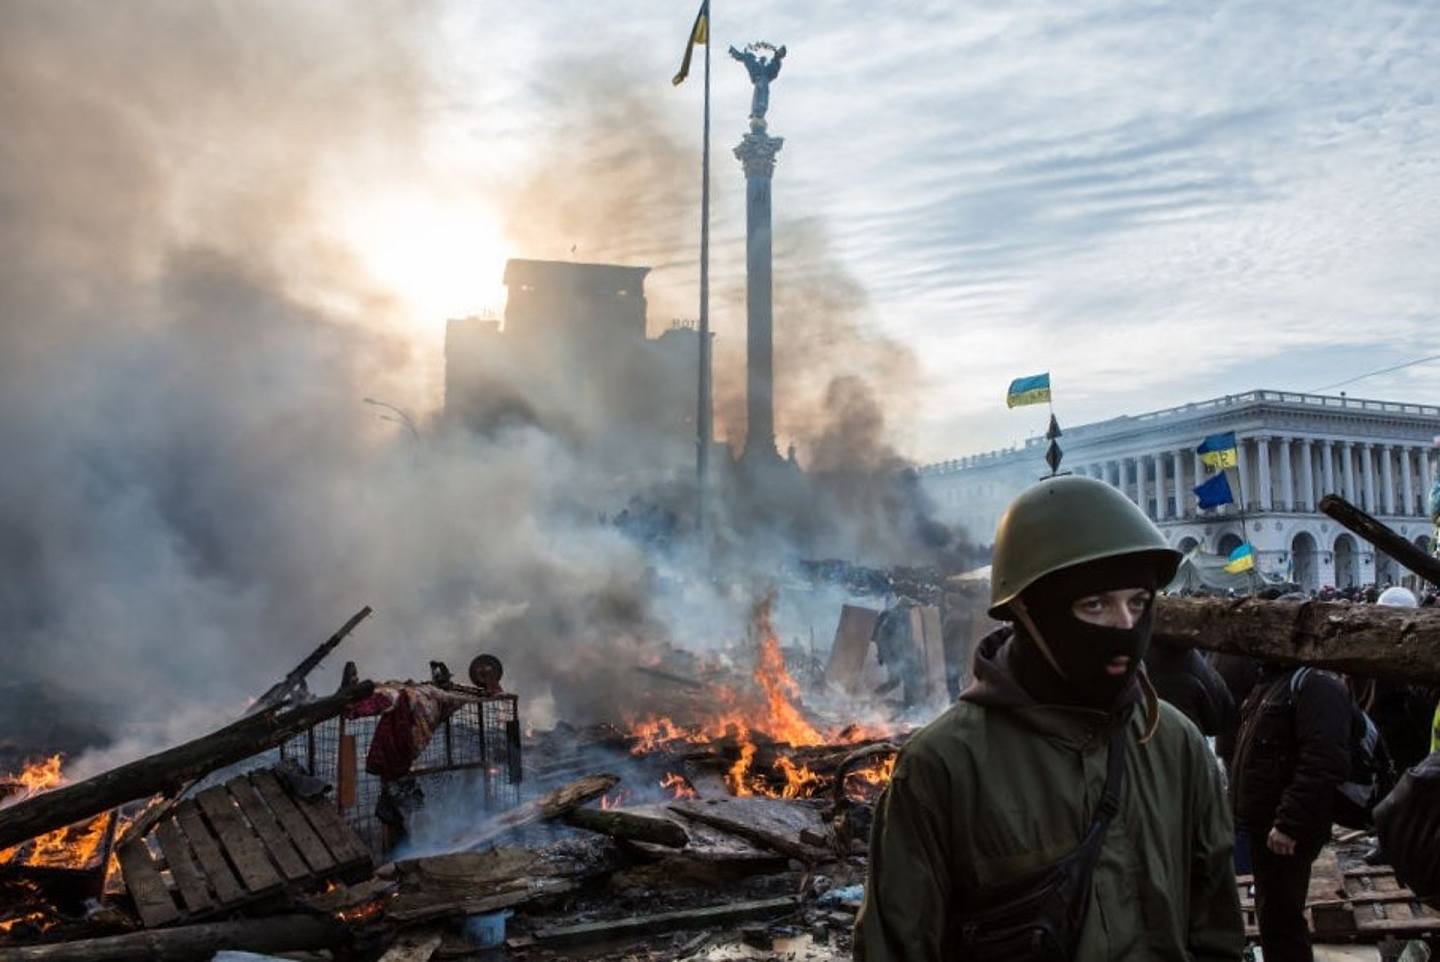 2013至14年的广场革命是乌克兰的转捩点，此后克里米亚被俄罗斯控制，顿巴斯地区战火不息，乌克兰与俄罗斯关系持续紧张。 (GettyImages)